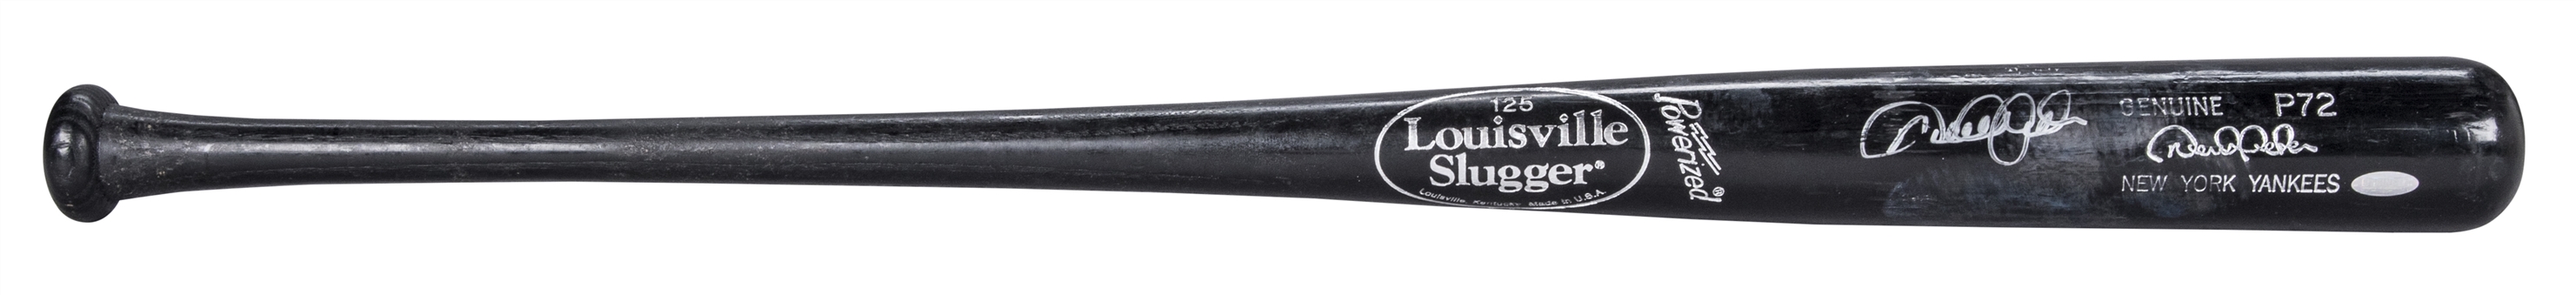 2012 Derek Jeter Game Used and Signed Louisville Slugger P72 Model Bat (PSA/DNA & Steiner)